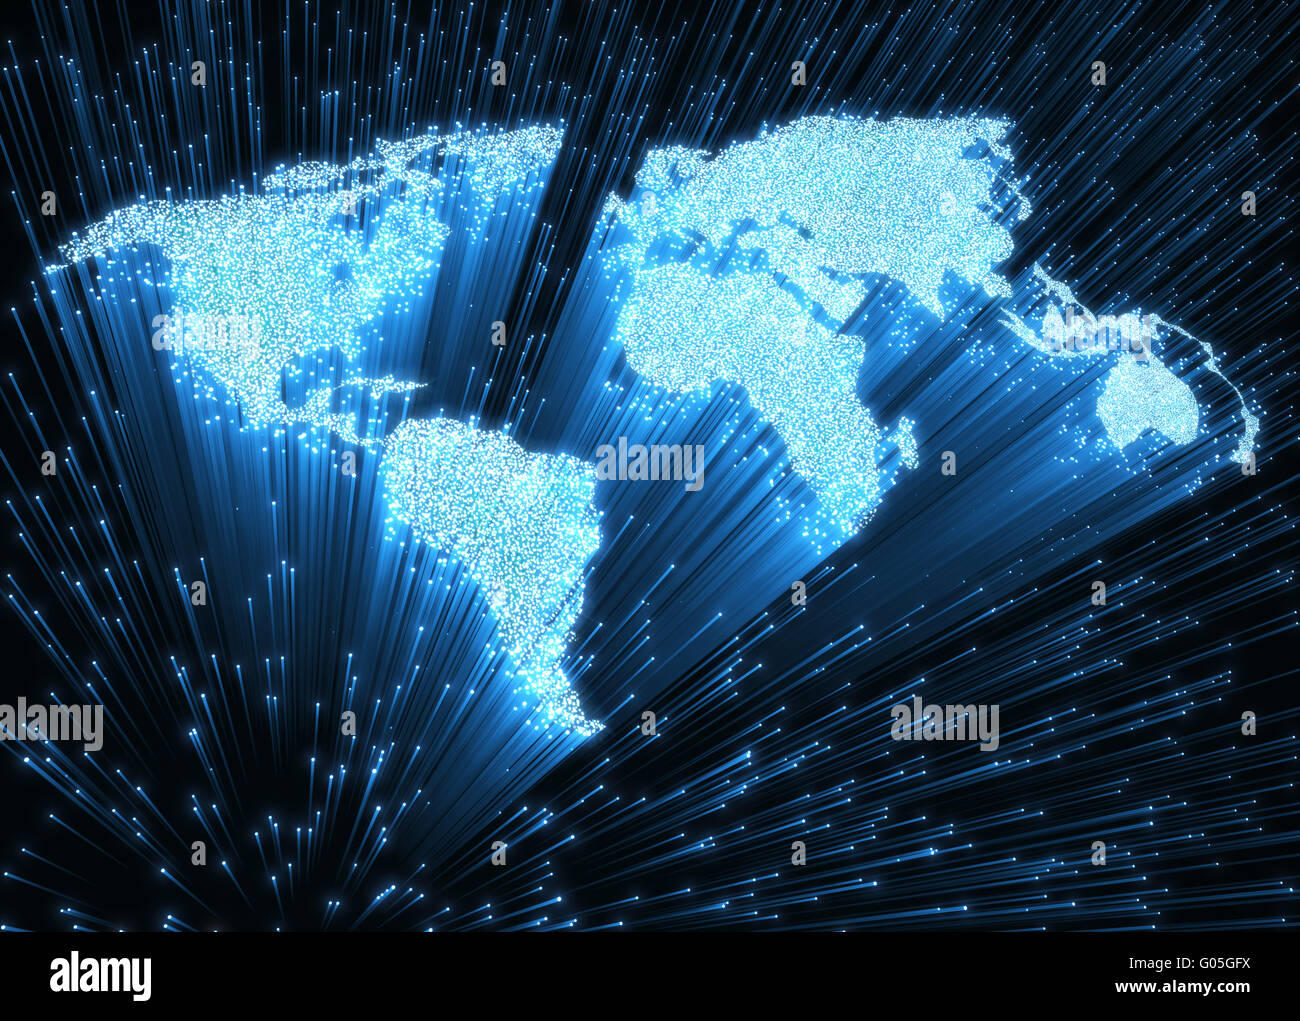 Fibre ottiche illuminate in forma di mappa del mondo. Immagine 3D concetto di comunicazione globale mediante fibra ottica. Foto Stock